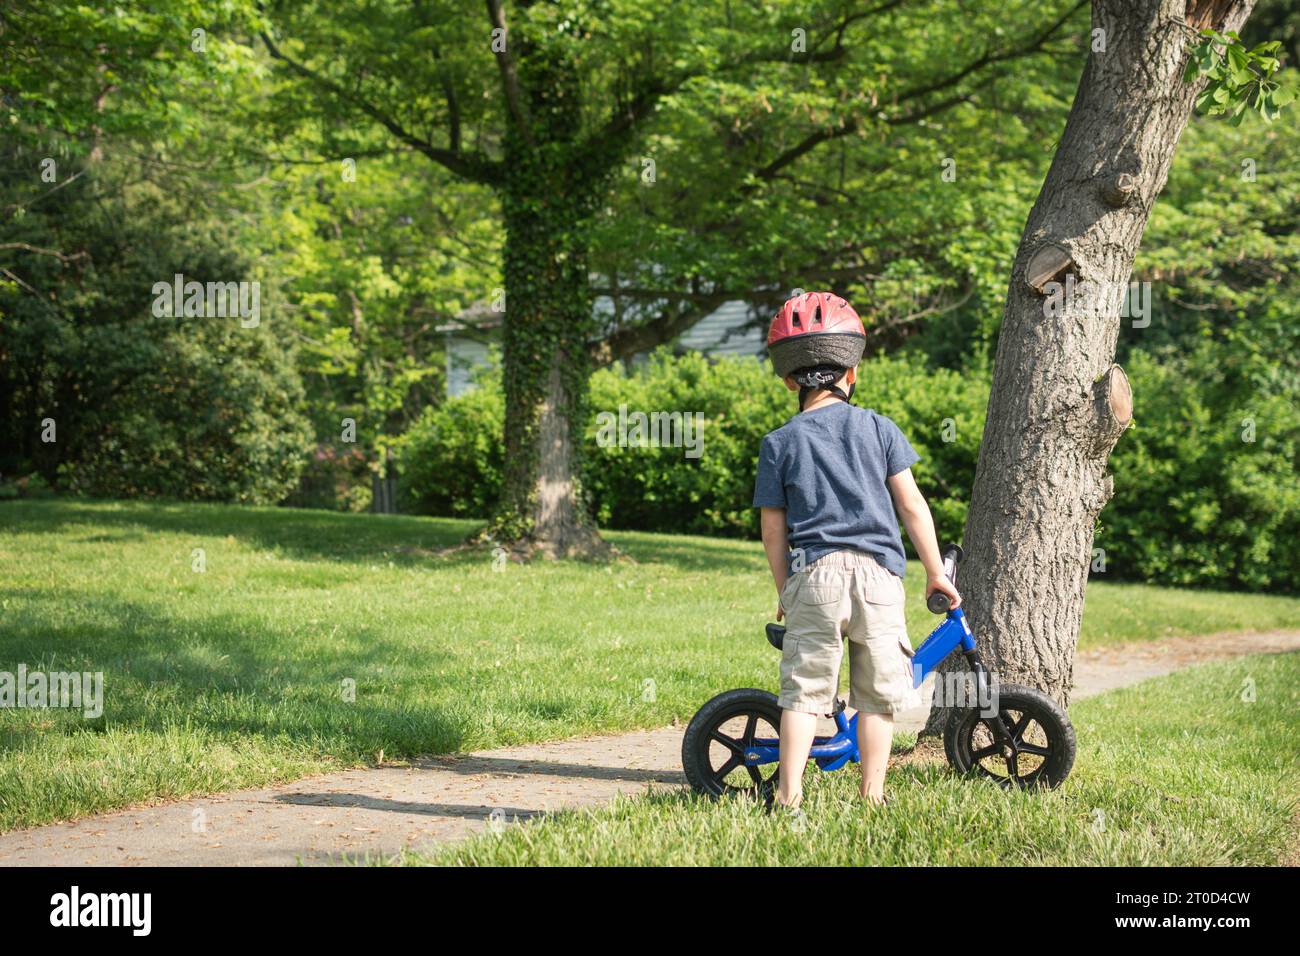 Jeune garçon se préparant à monter le vélo d'équilibre sur le trottoir de banlieue. Banque D'Images